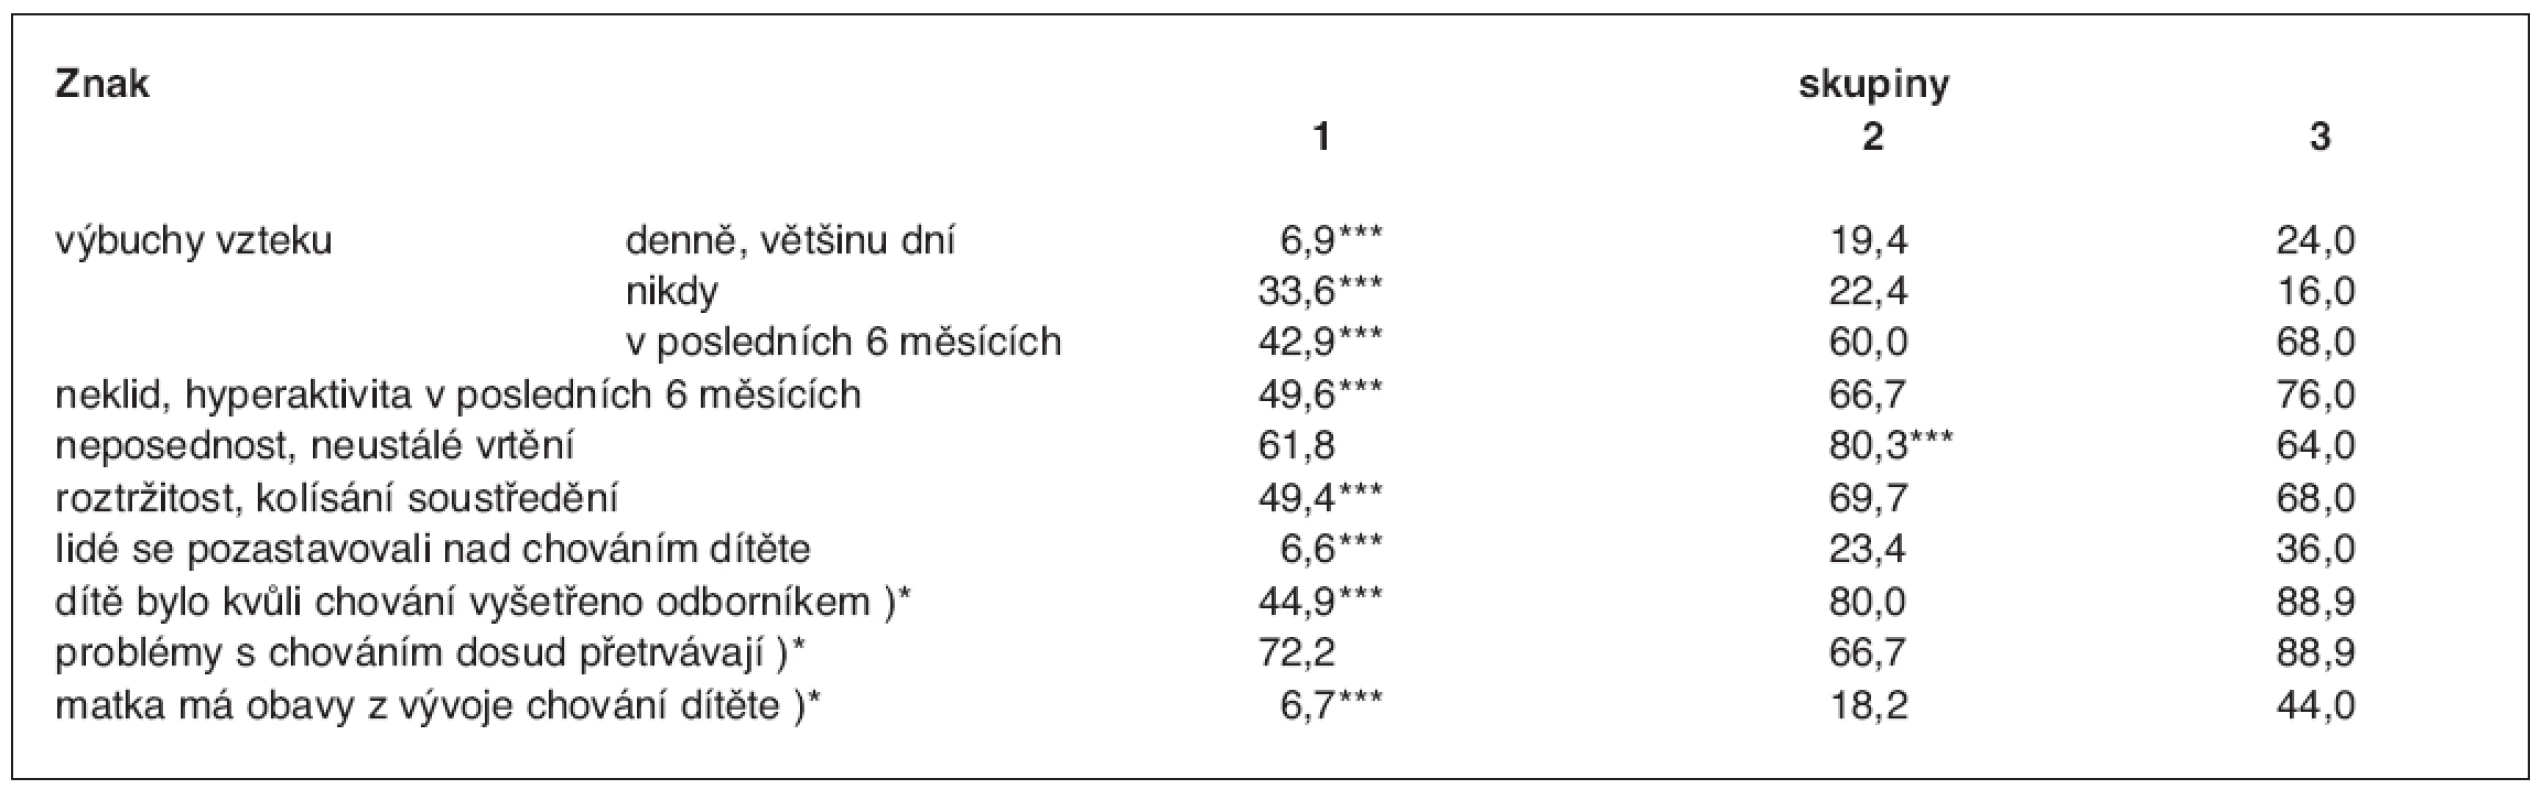 Frekvence poruch chování podle údajů matky (%)